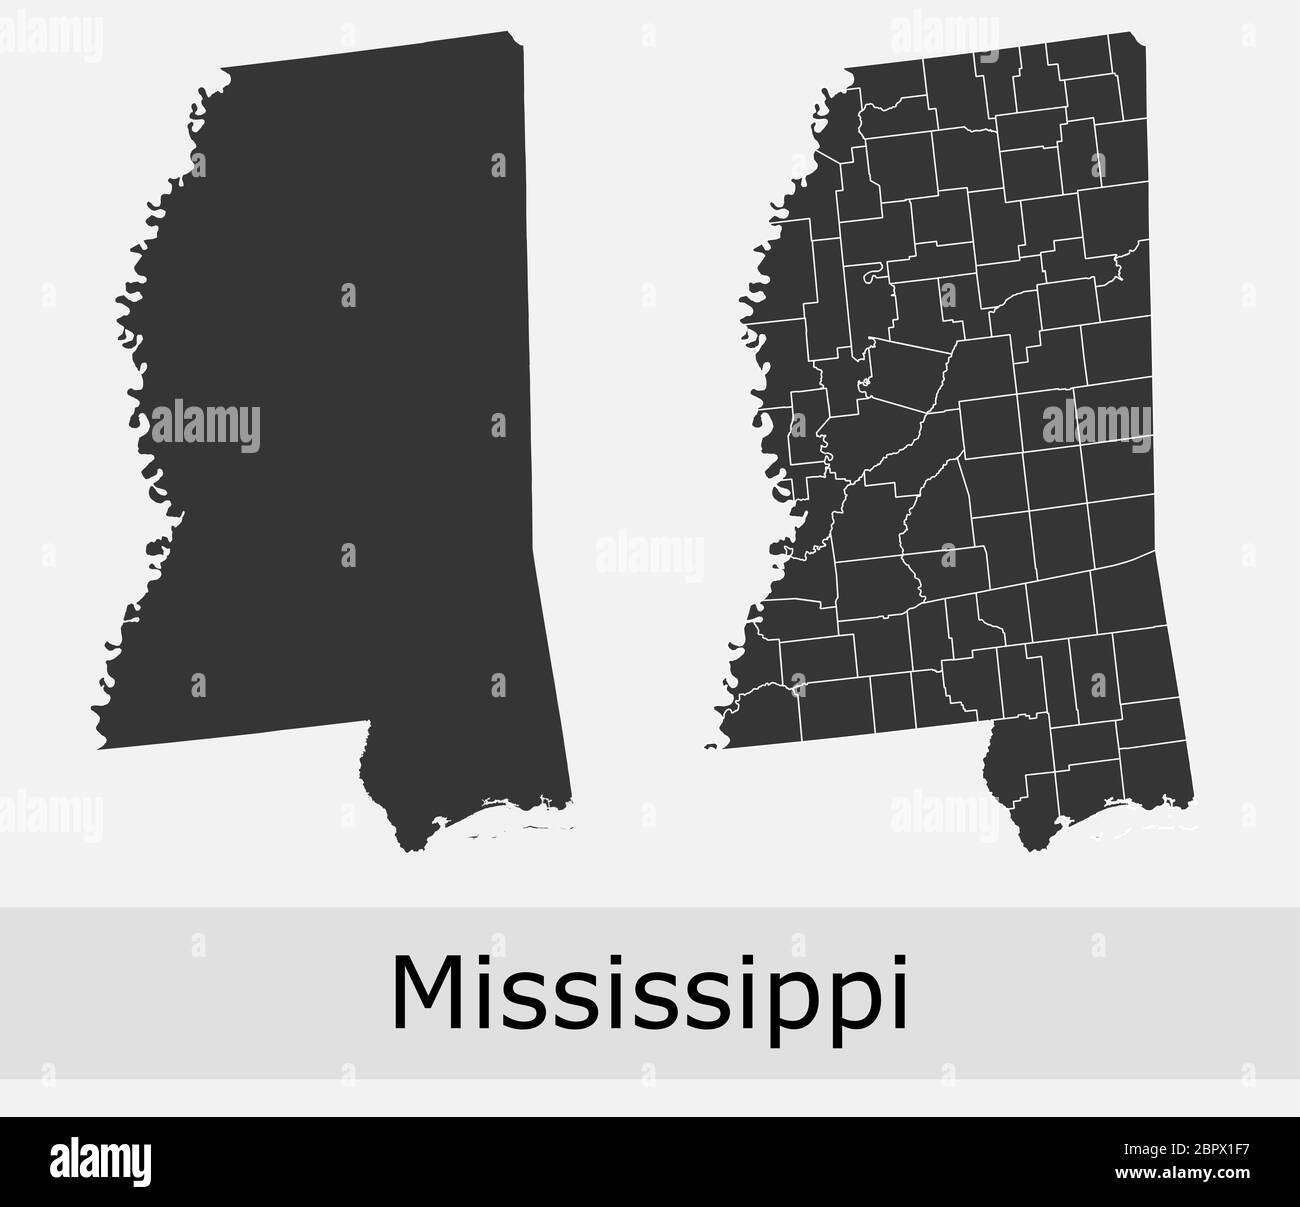 Mississippi mappe vettoriali contorni contee, comuni, regioni, comuni, dipartimenti, frontiere Illustrazione Vettoriale